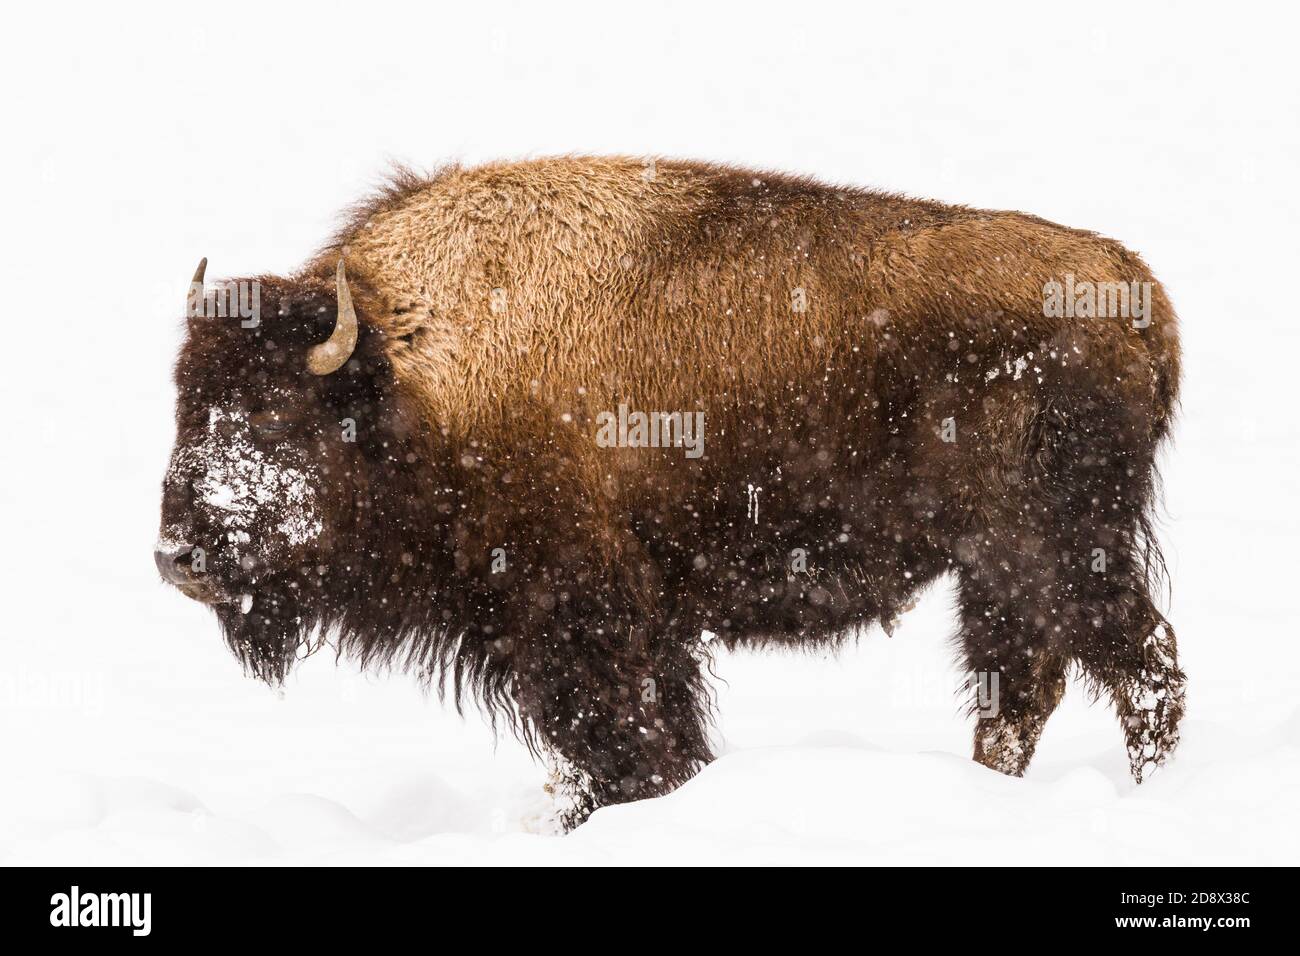 Un bison américain dans une tempête de neige dans le parc national de Yellowstone, Wyoming, États-Unis. Banque D'Images